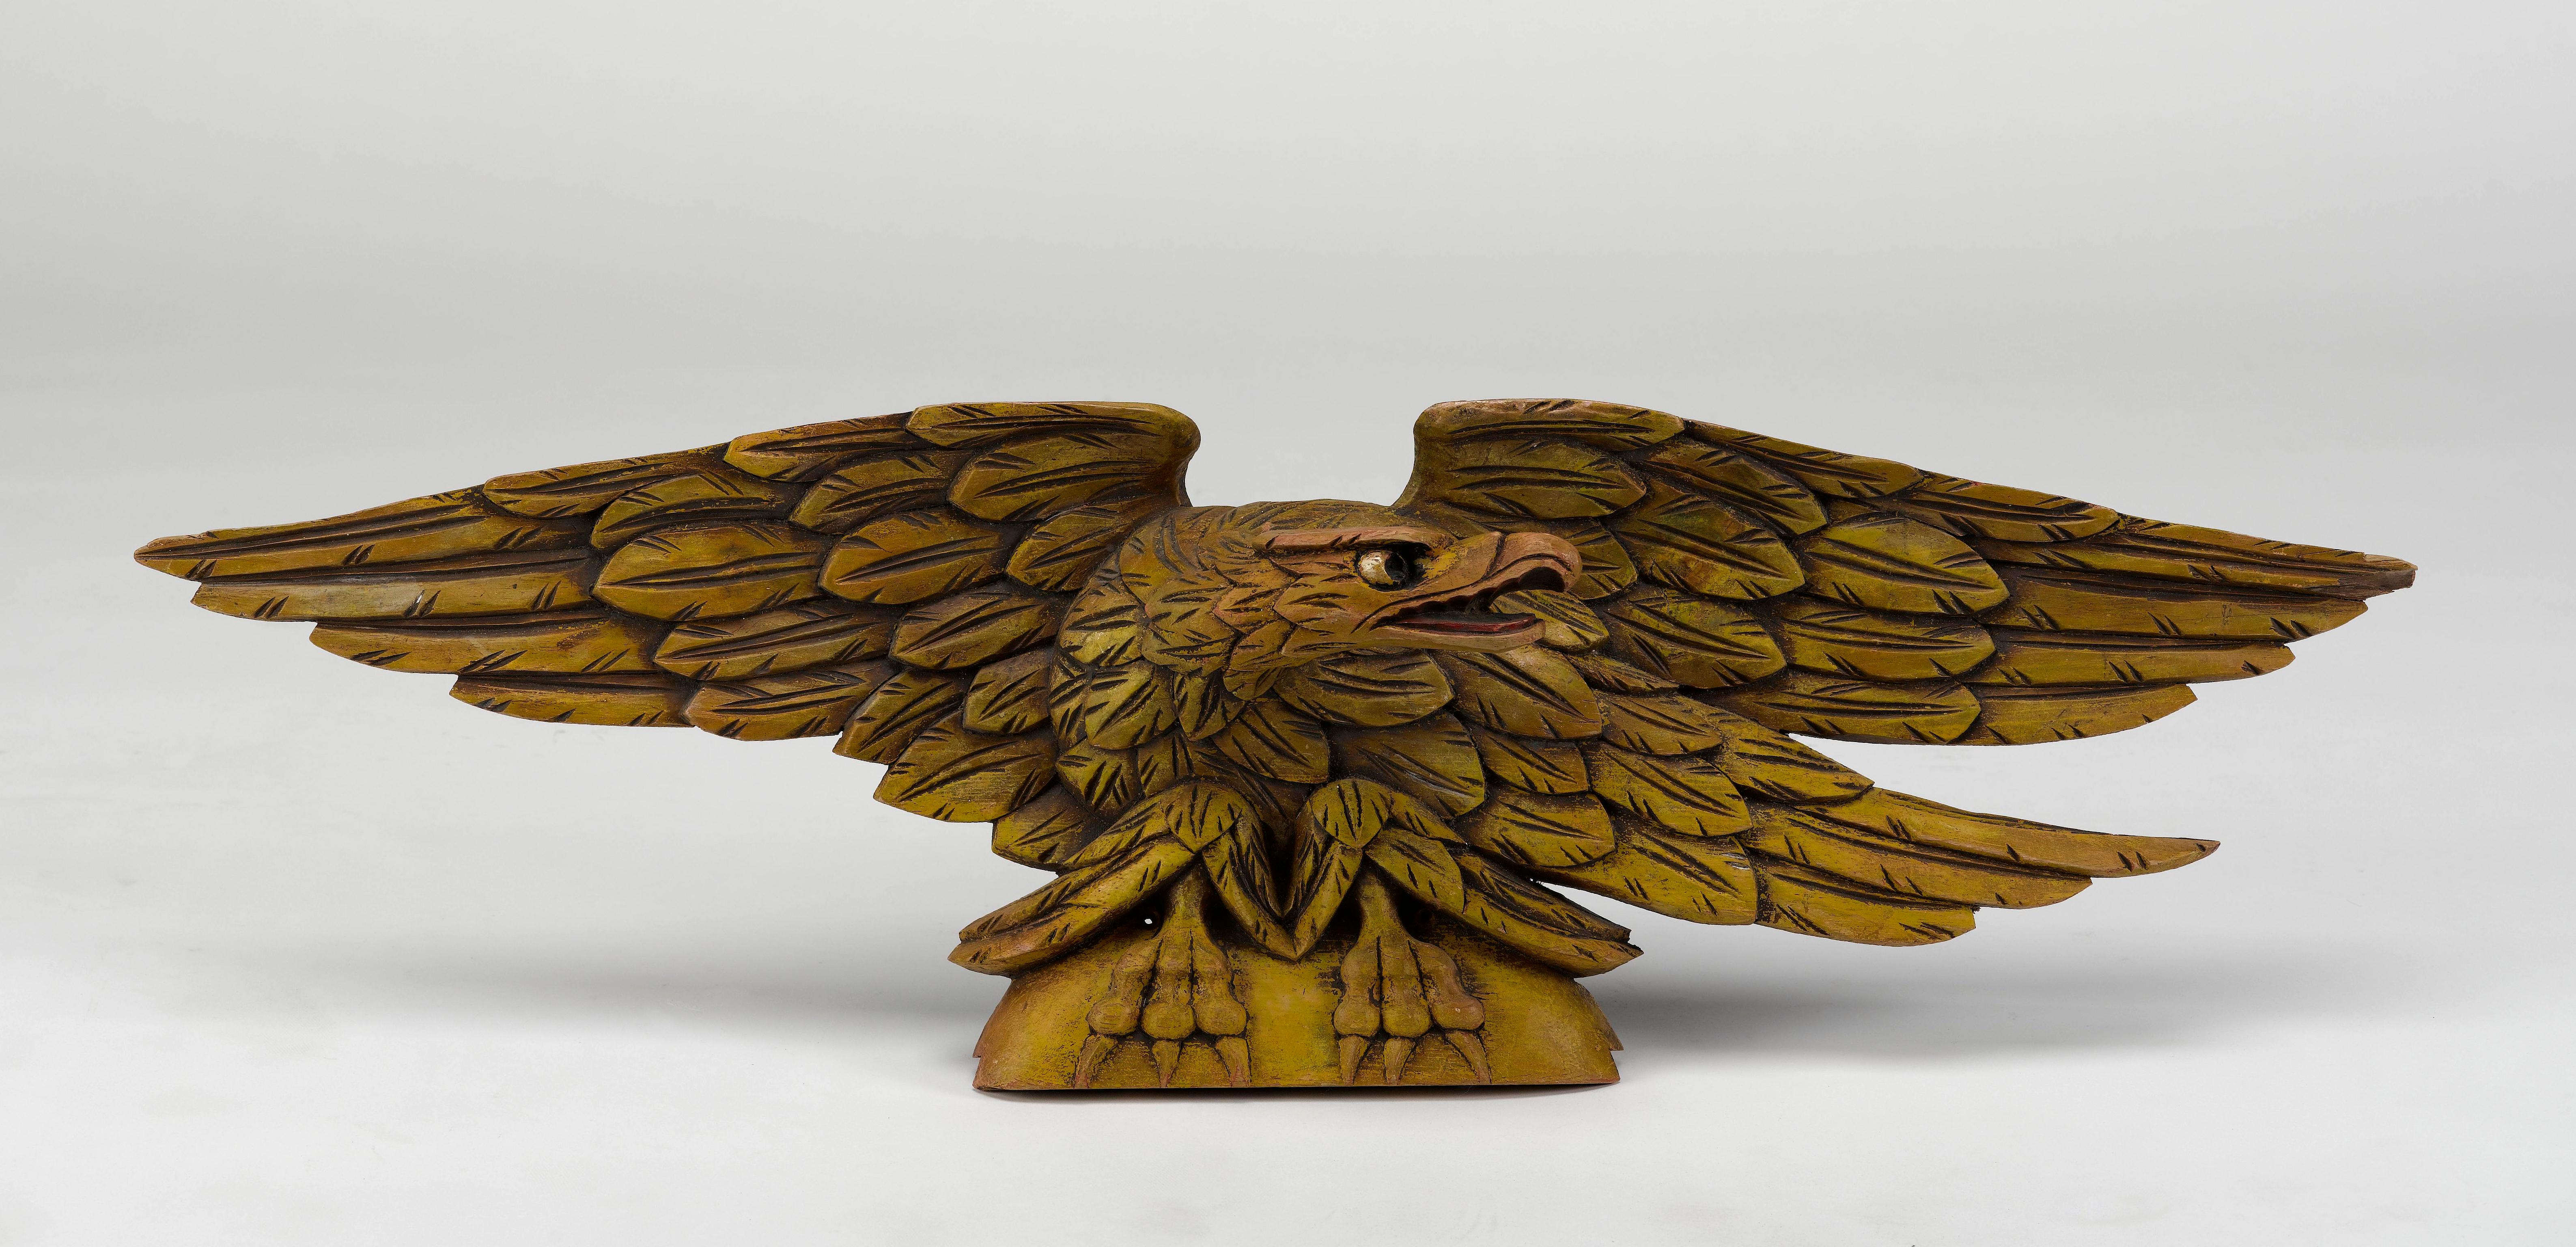 Il s'agit d'un aigle américain original, sculpté à la main dans du pin au début ou au milieu du XXe siècle. L'aigle présente une touche de dorure d'origine sur fond jaune, avec des reflets peints à la main, soulignant les yeux et le bec.

L'aigle